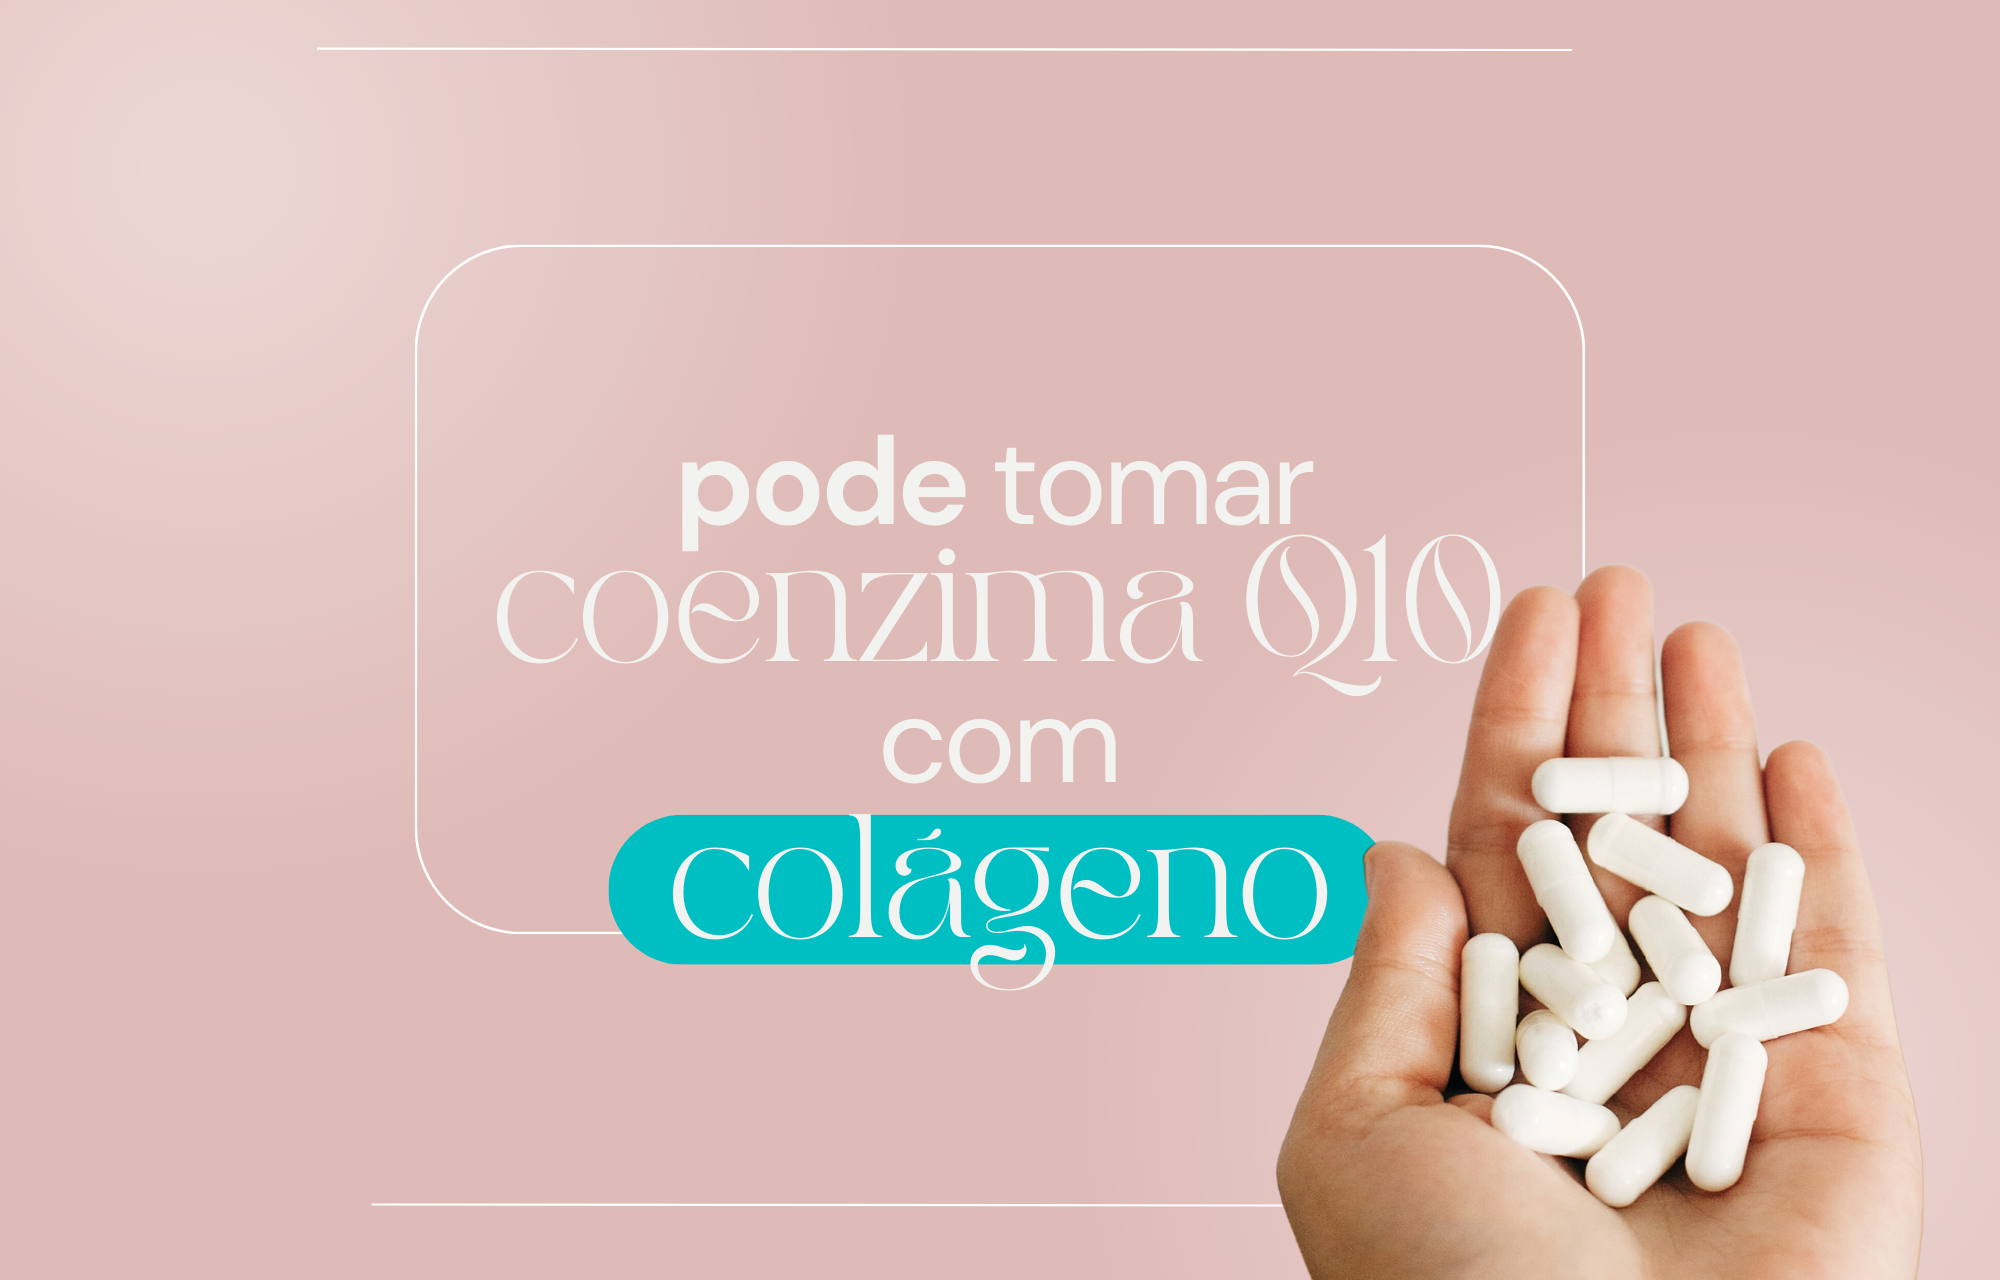 Pode tomar coenzima q10 com colageno